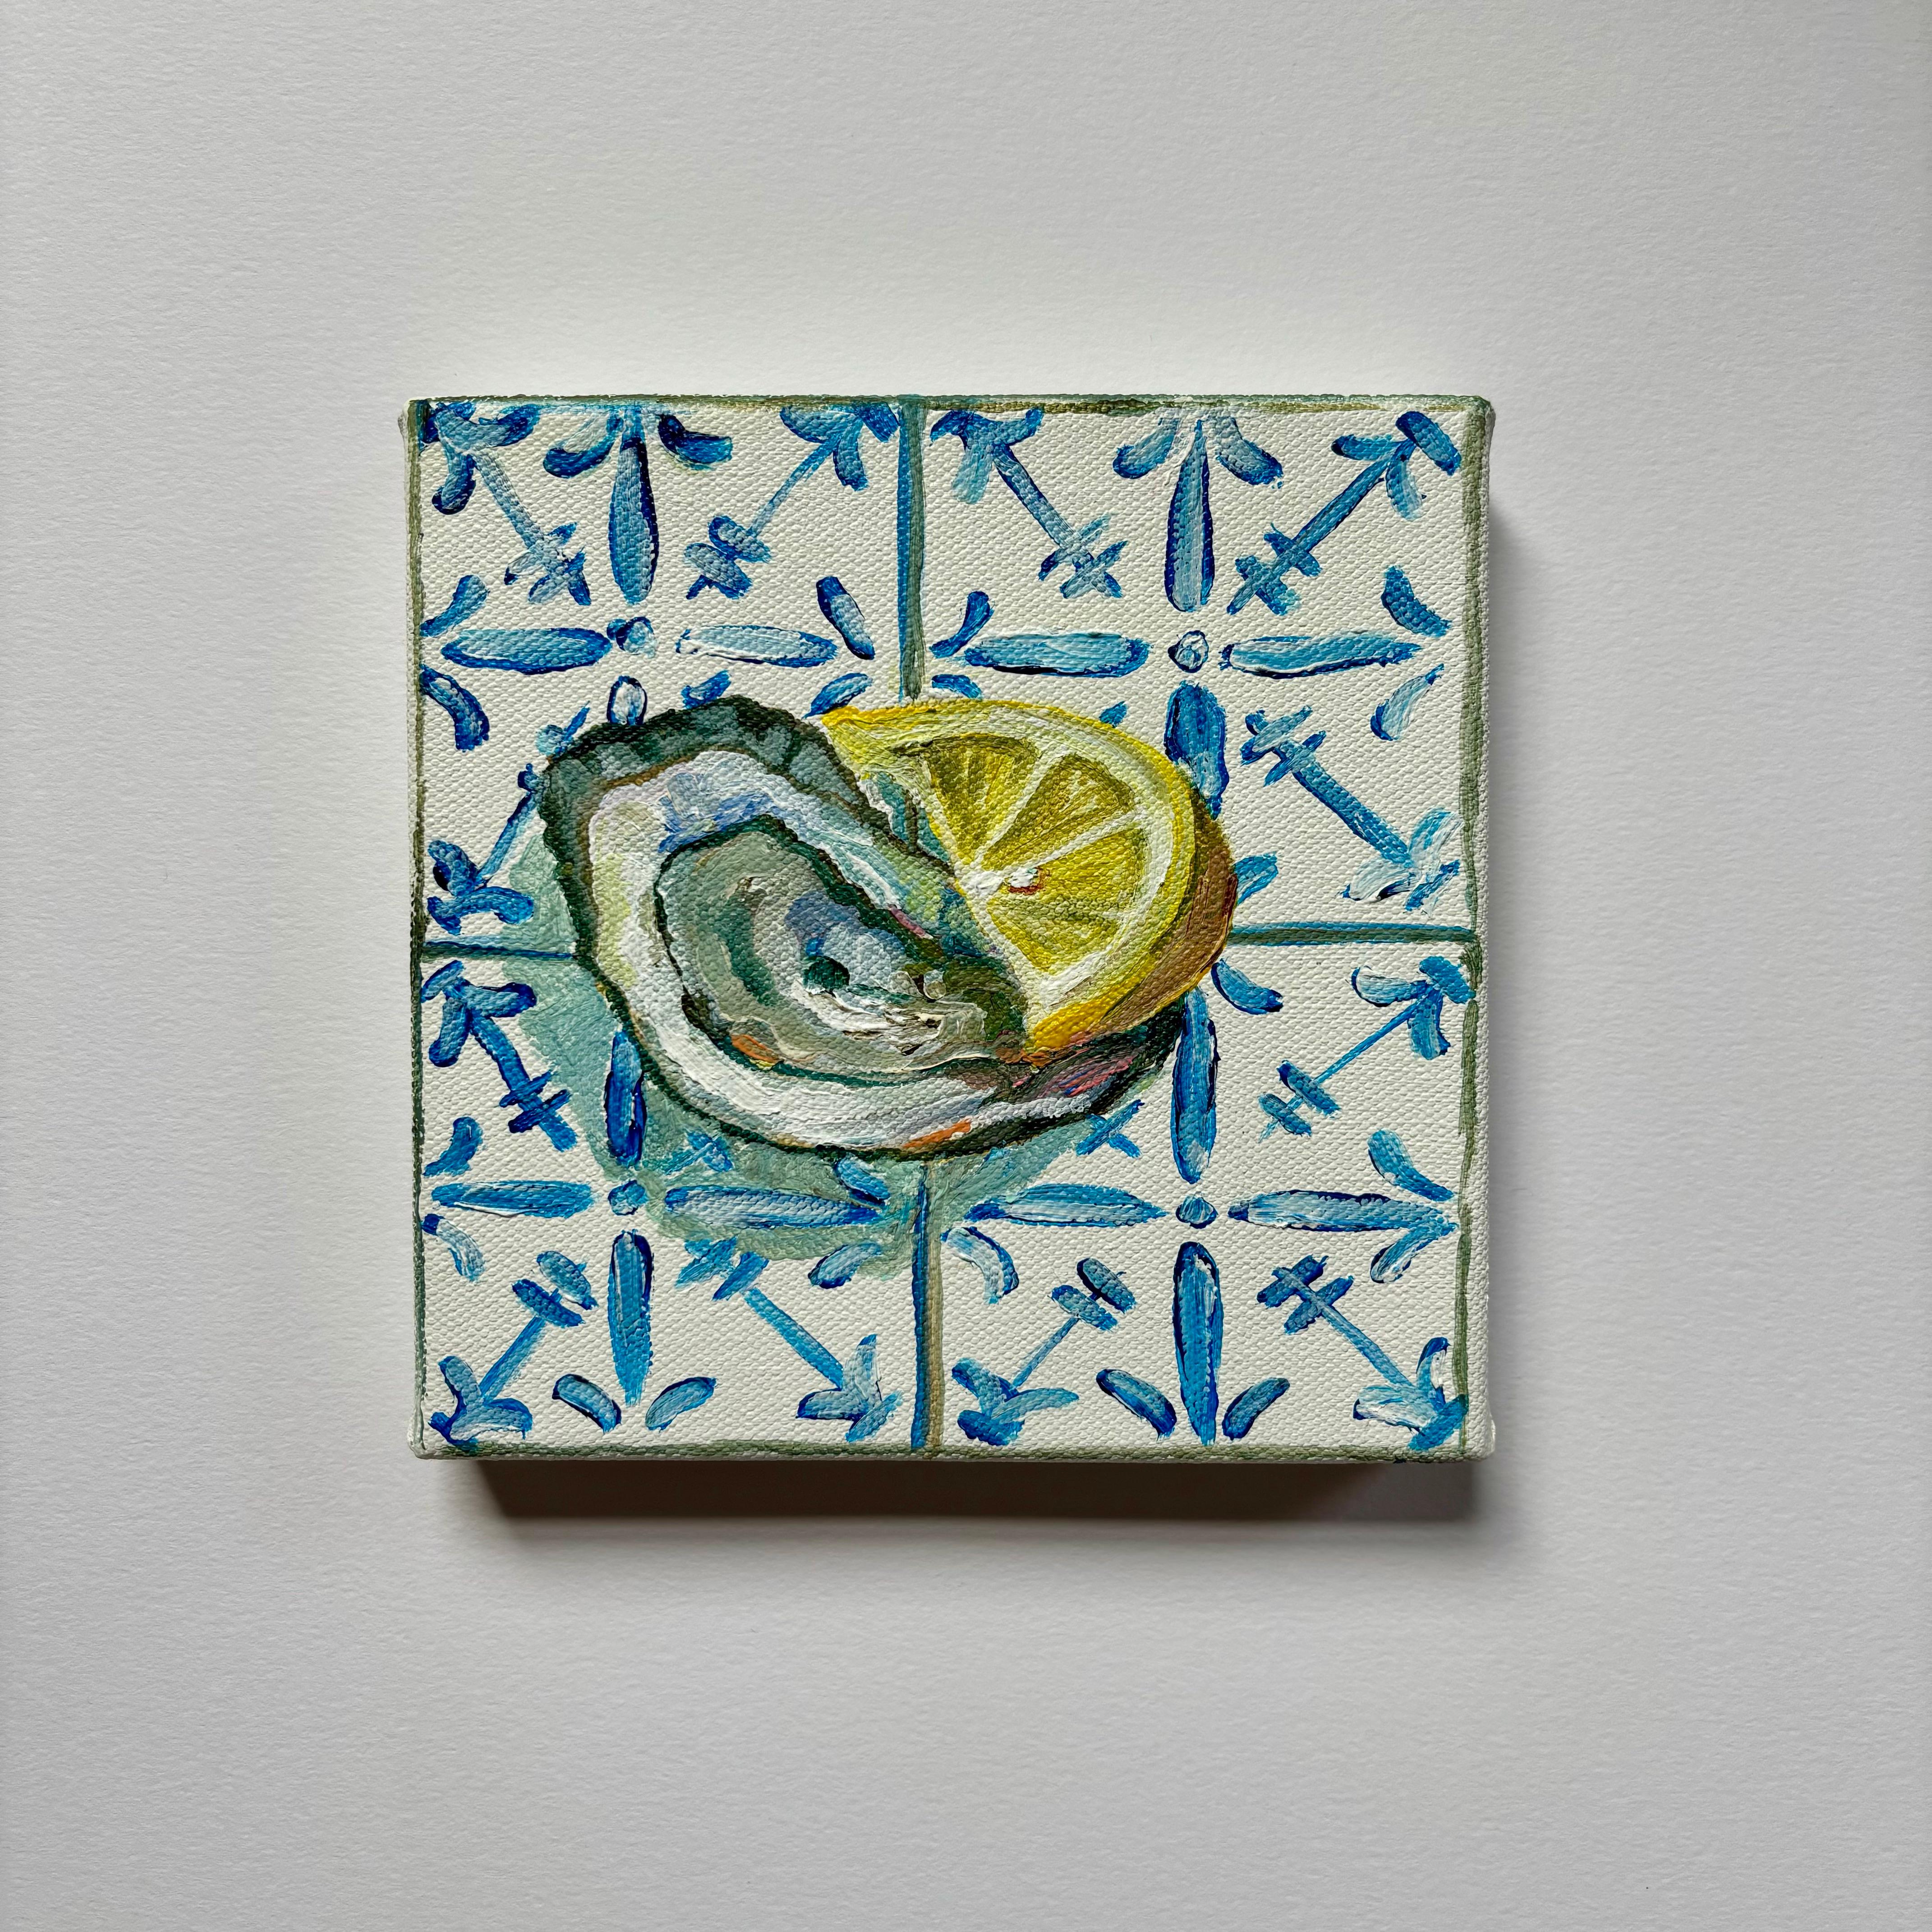 Cette nature morte contemporaine représente une huître fraîche et vibrante avec une tranche de citron sur des carreaux méditerranéens bleus et blancs. Cette boîte en toile fait partie de ma série MINI Tiles, et est prête à être accrochée sans cadre.